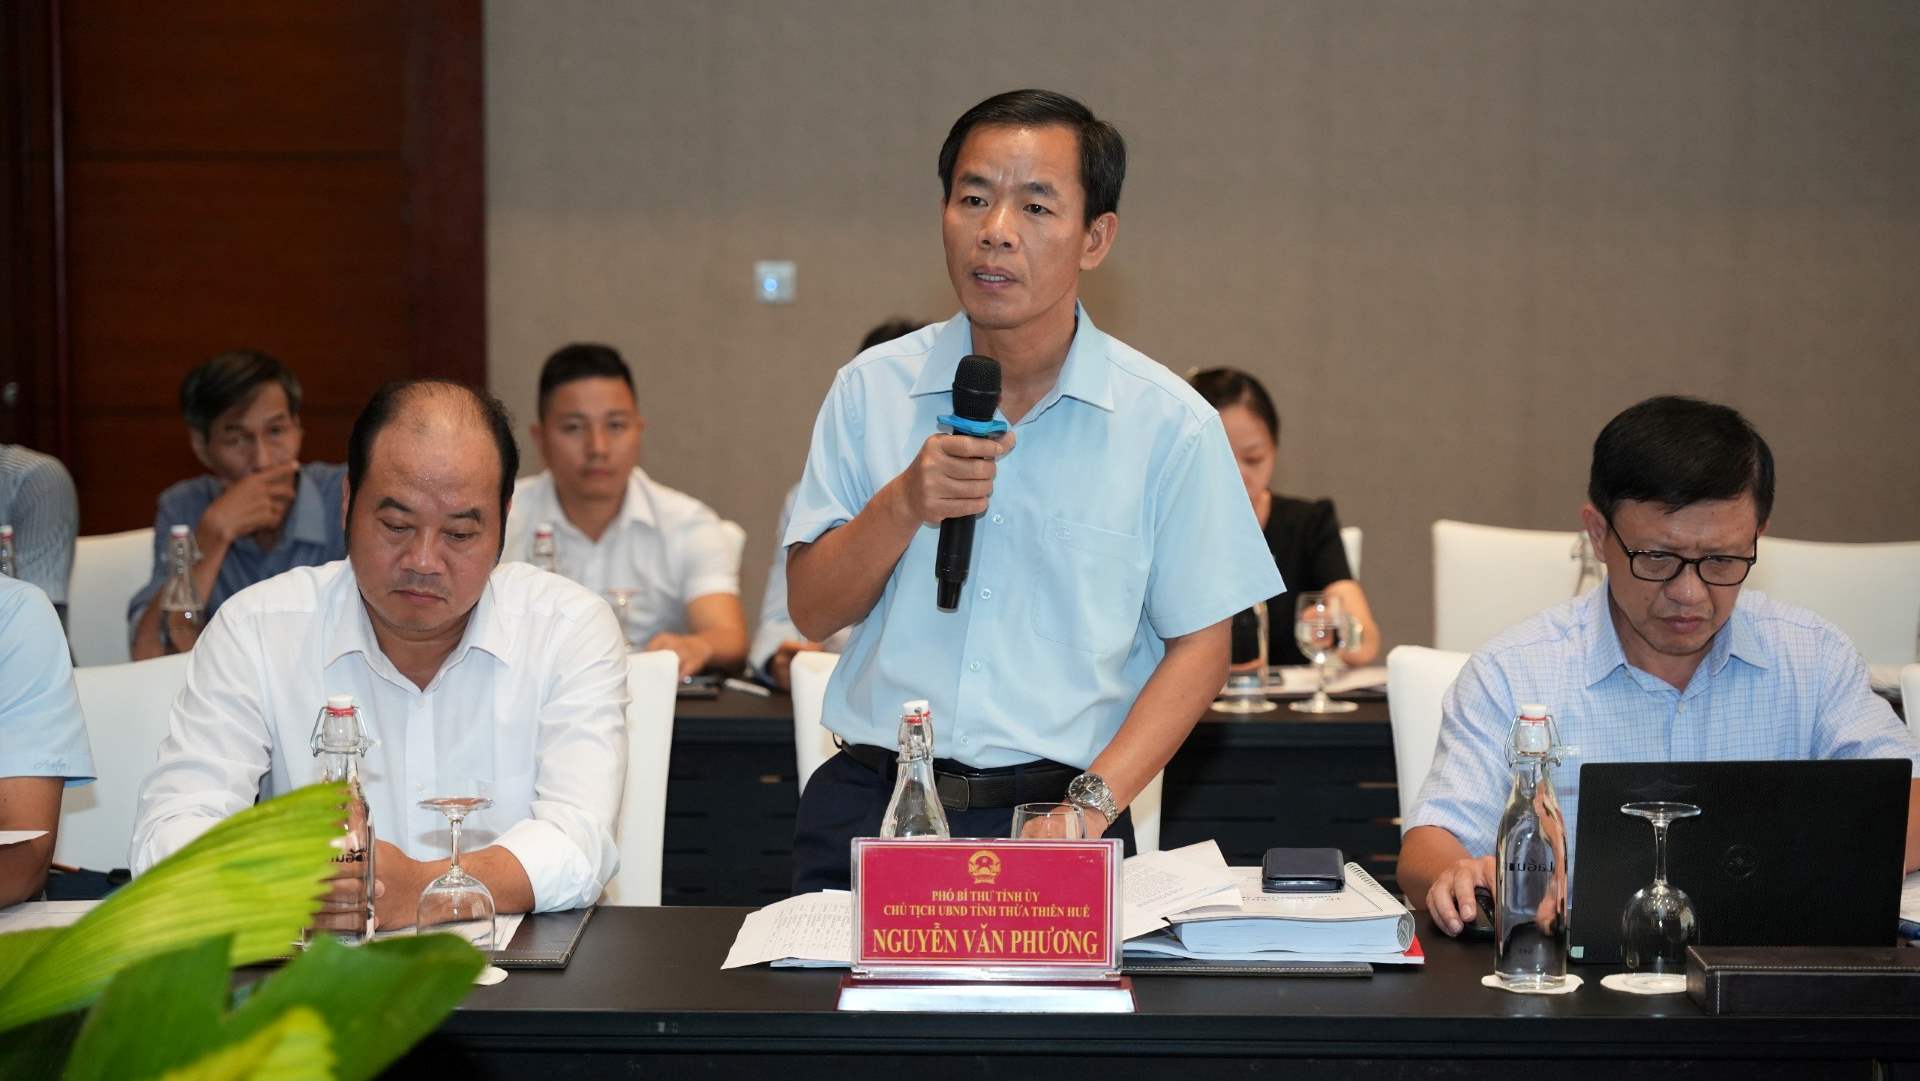 Chủ tịch UBND tỉnh Thừa Thiên Huế Nguyễn Văn Phương phát biểu tại buổi làm viêc. Ảnh: Ngọc Hiếu.